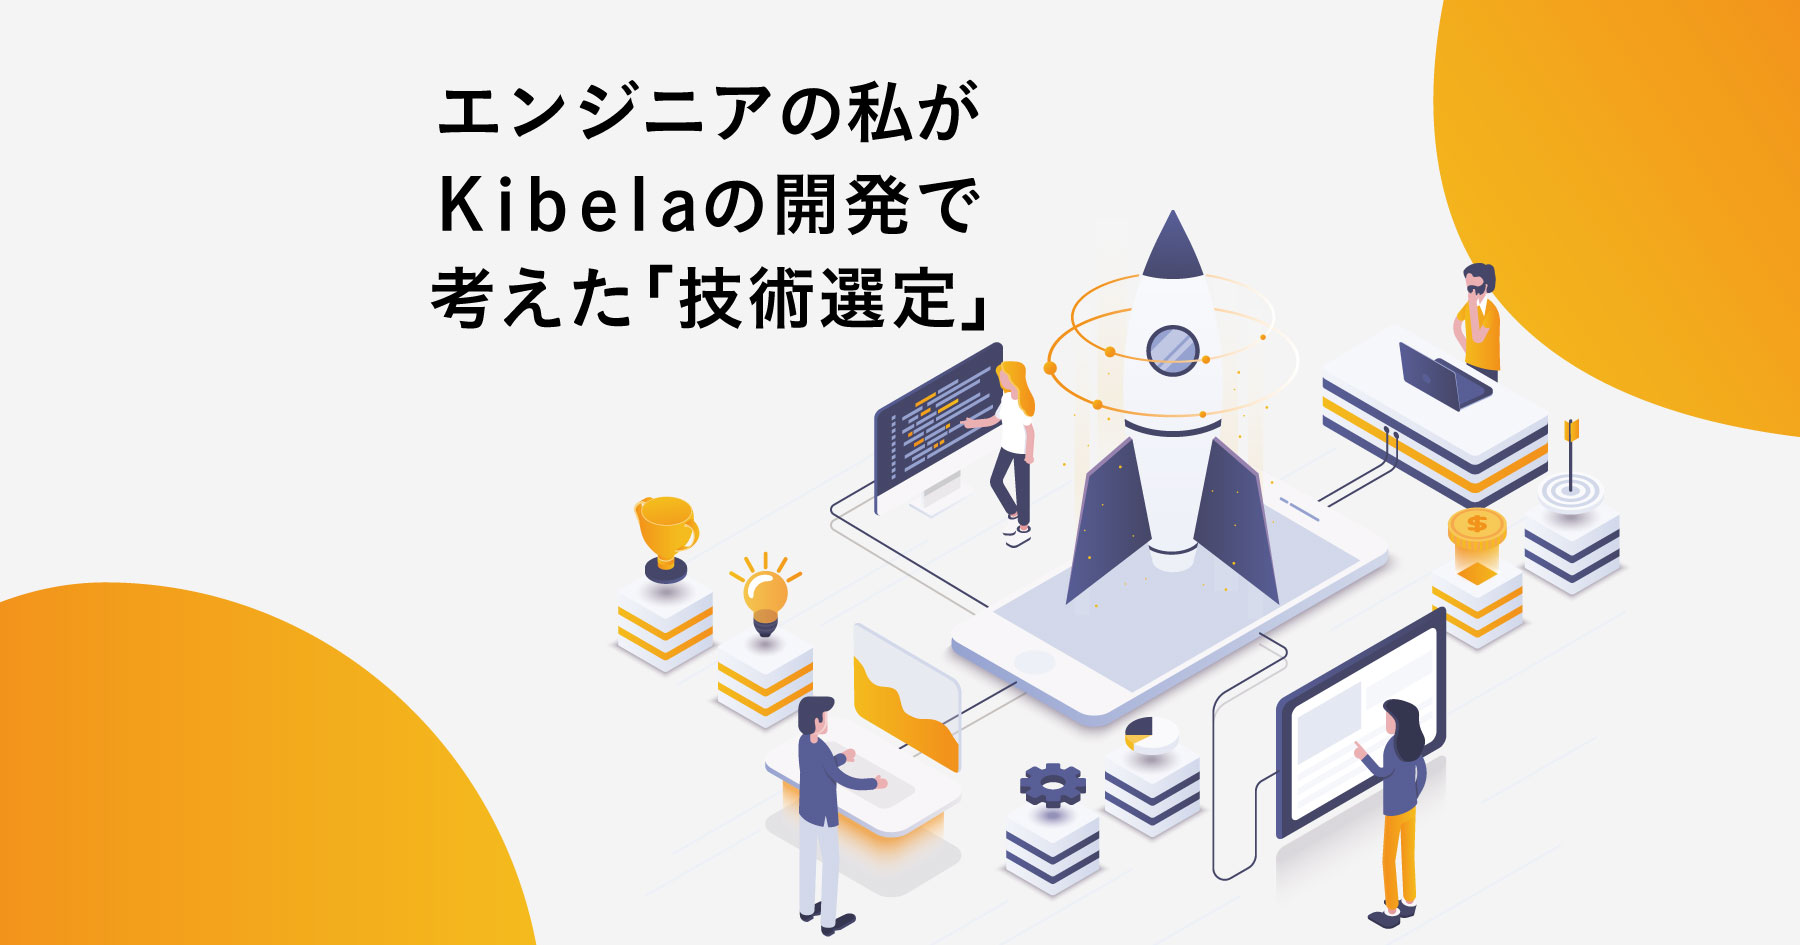 Kibela開発における技術選択の指針を全部教える。必要十分に新しい技術を維持するための考え方